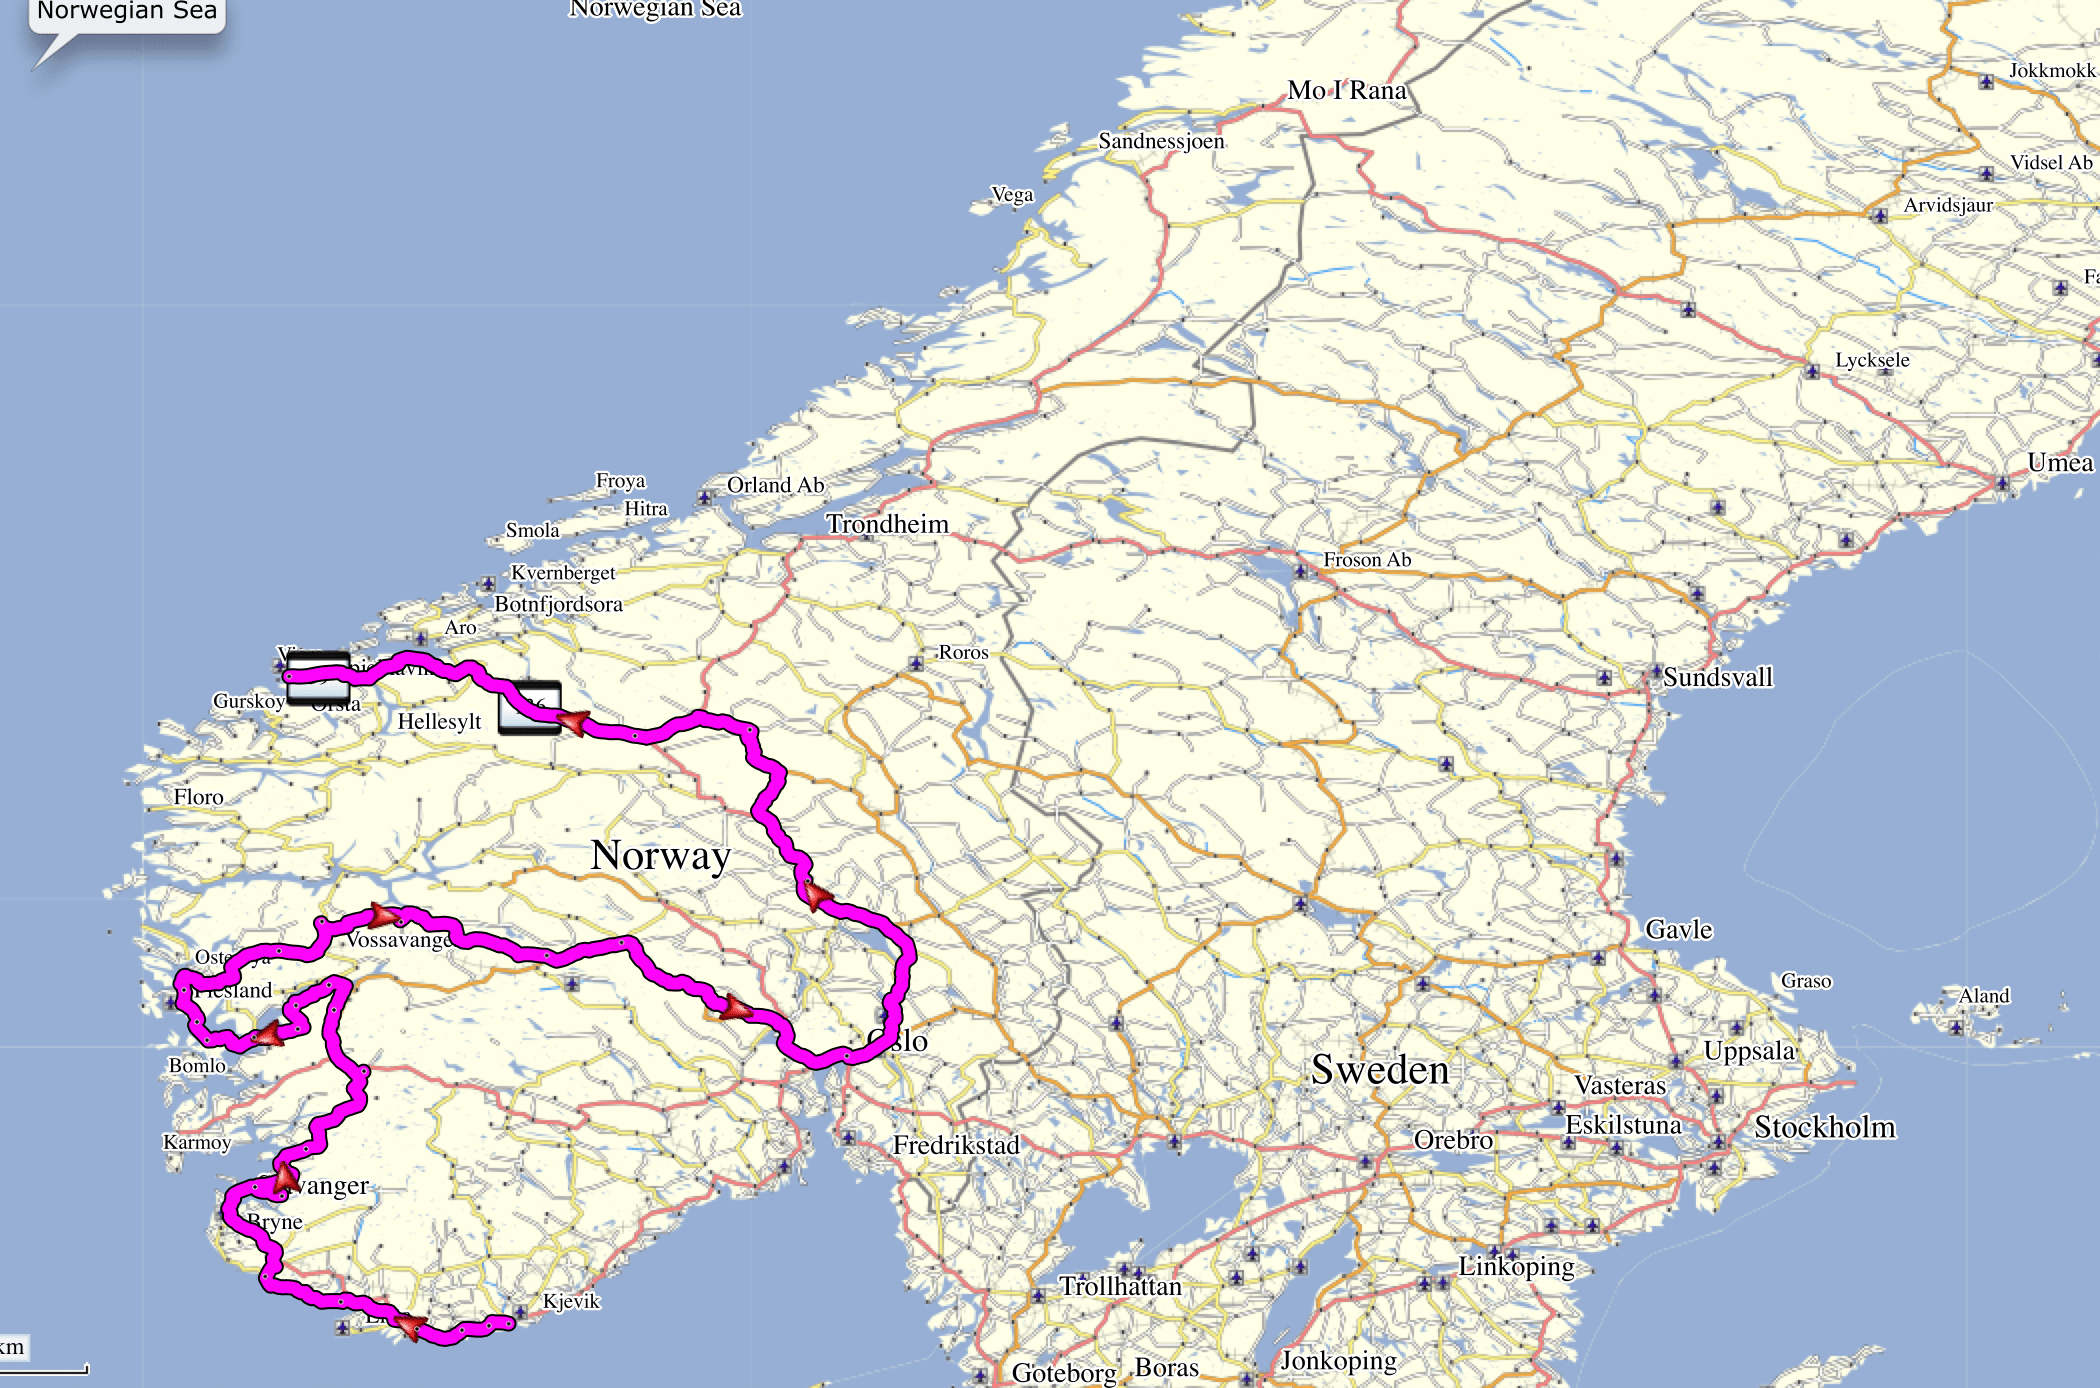 De route die we hebben afgelegd tijdens onze roadtrip door Zuid-Noorwegen